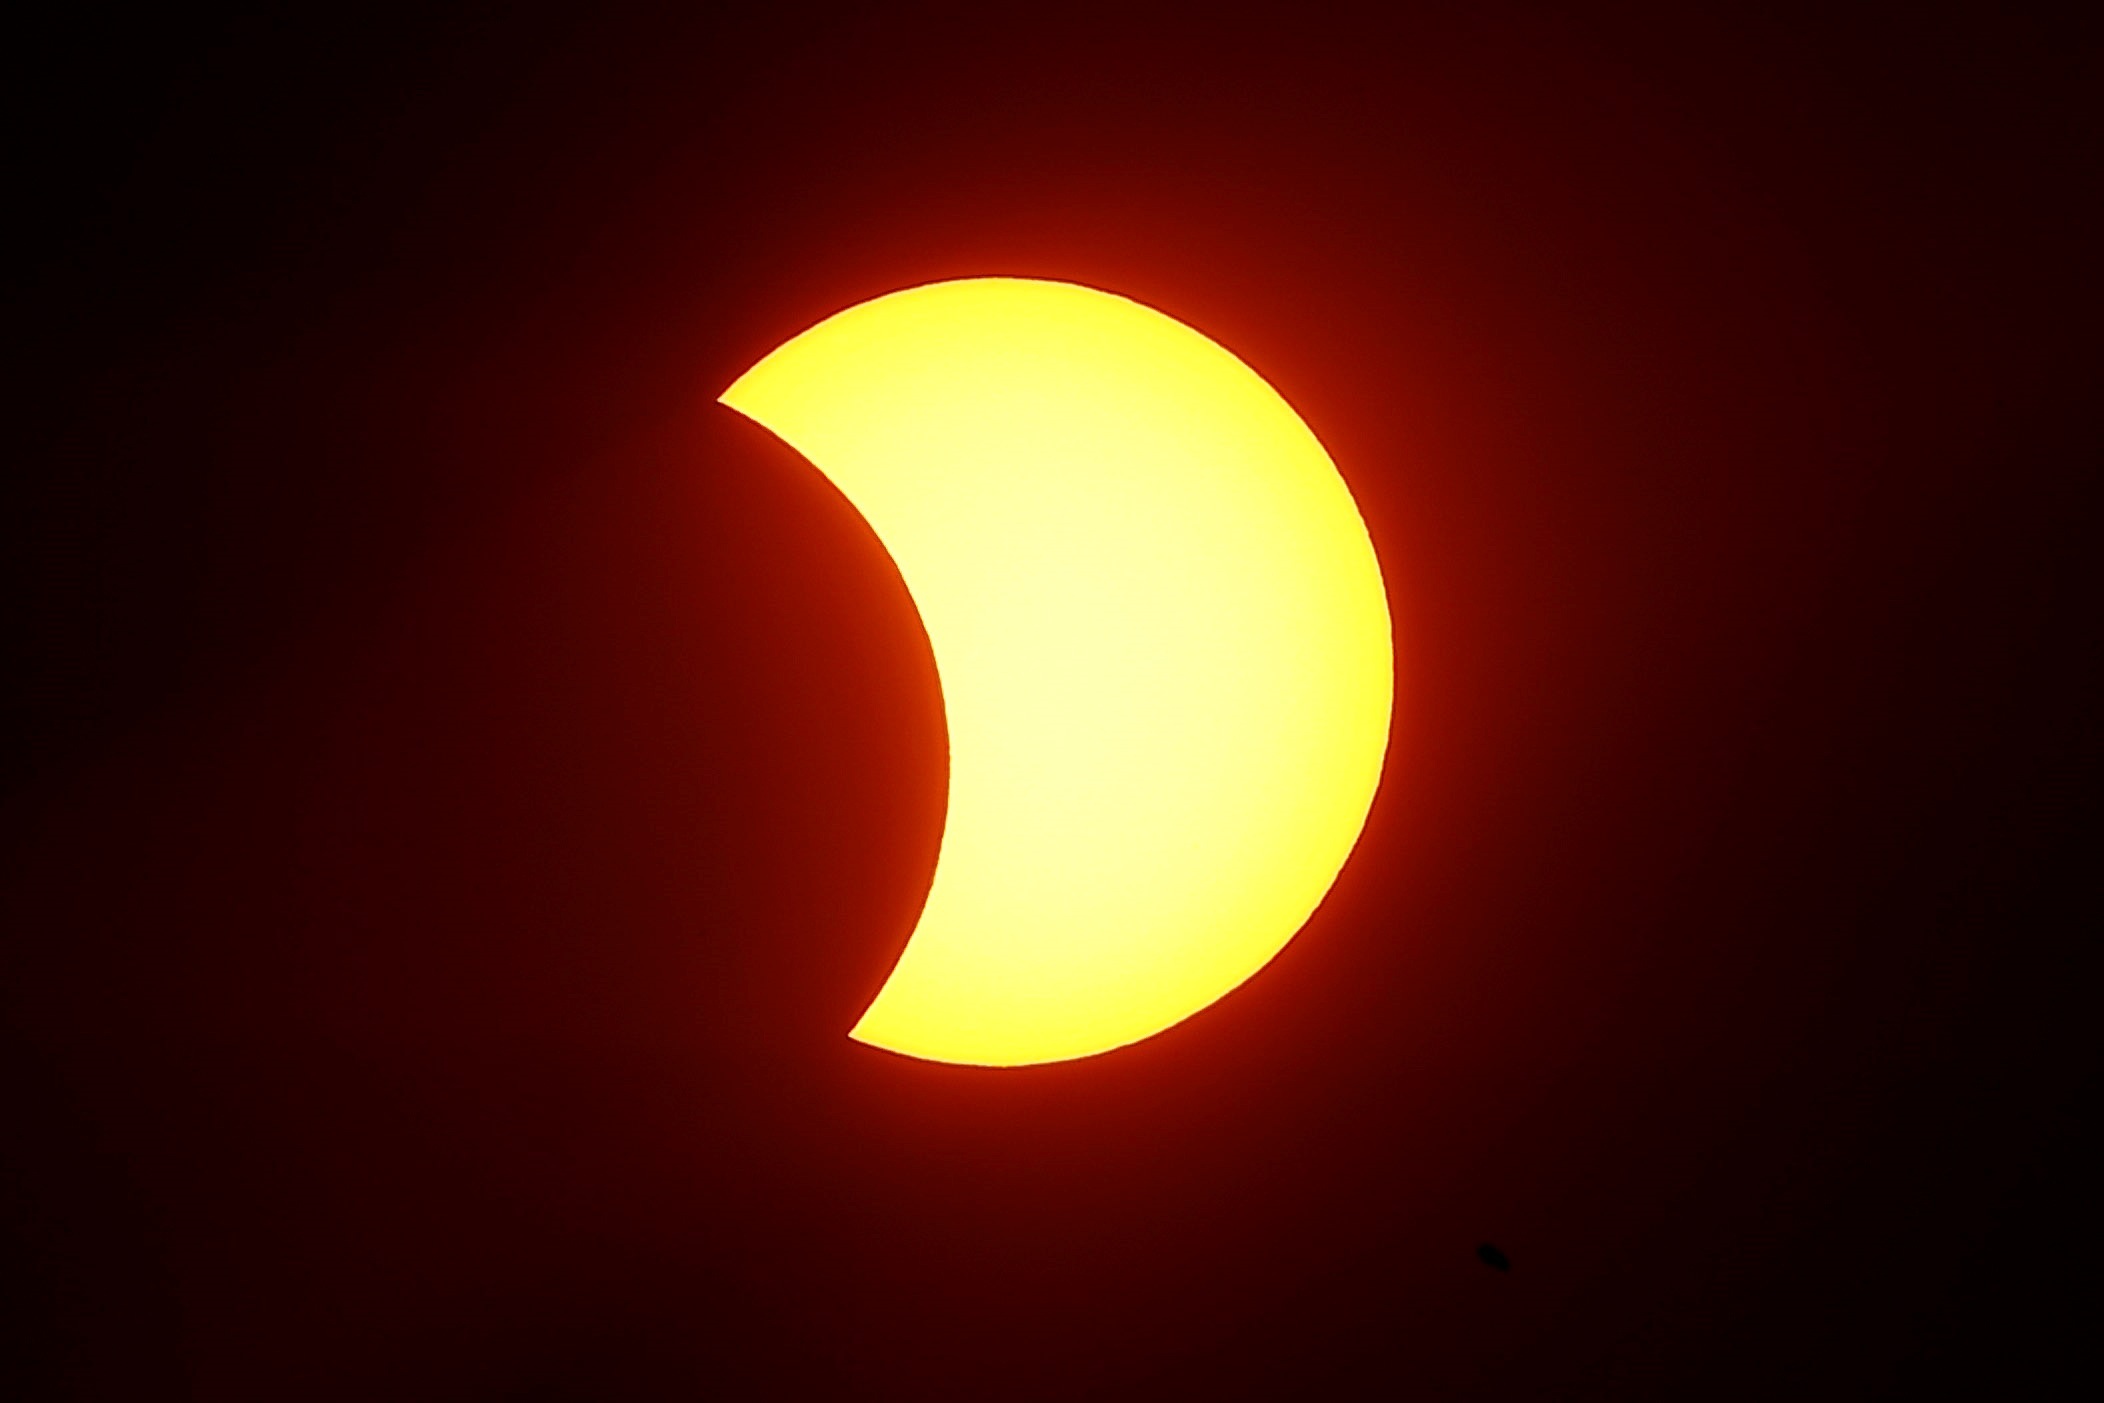 El eclipse parcial de sol pudo observarse desde Mendoza - Diario Mendoza